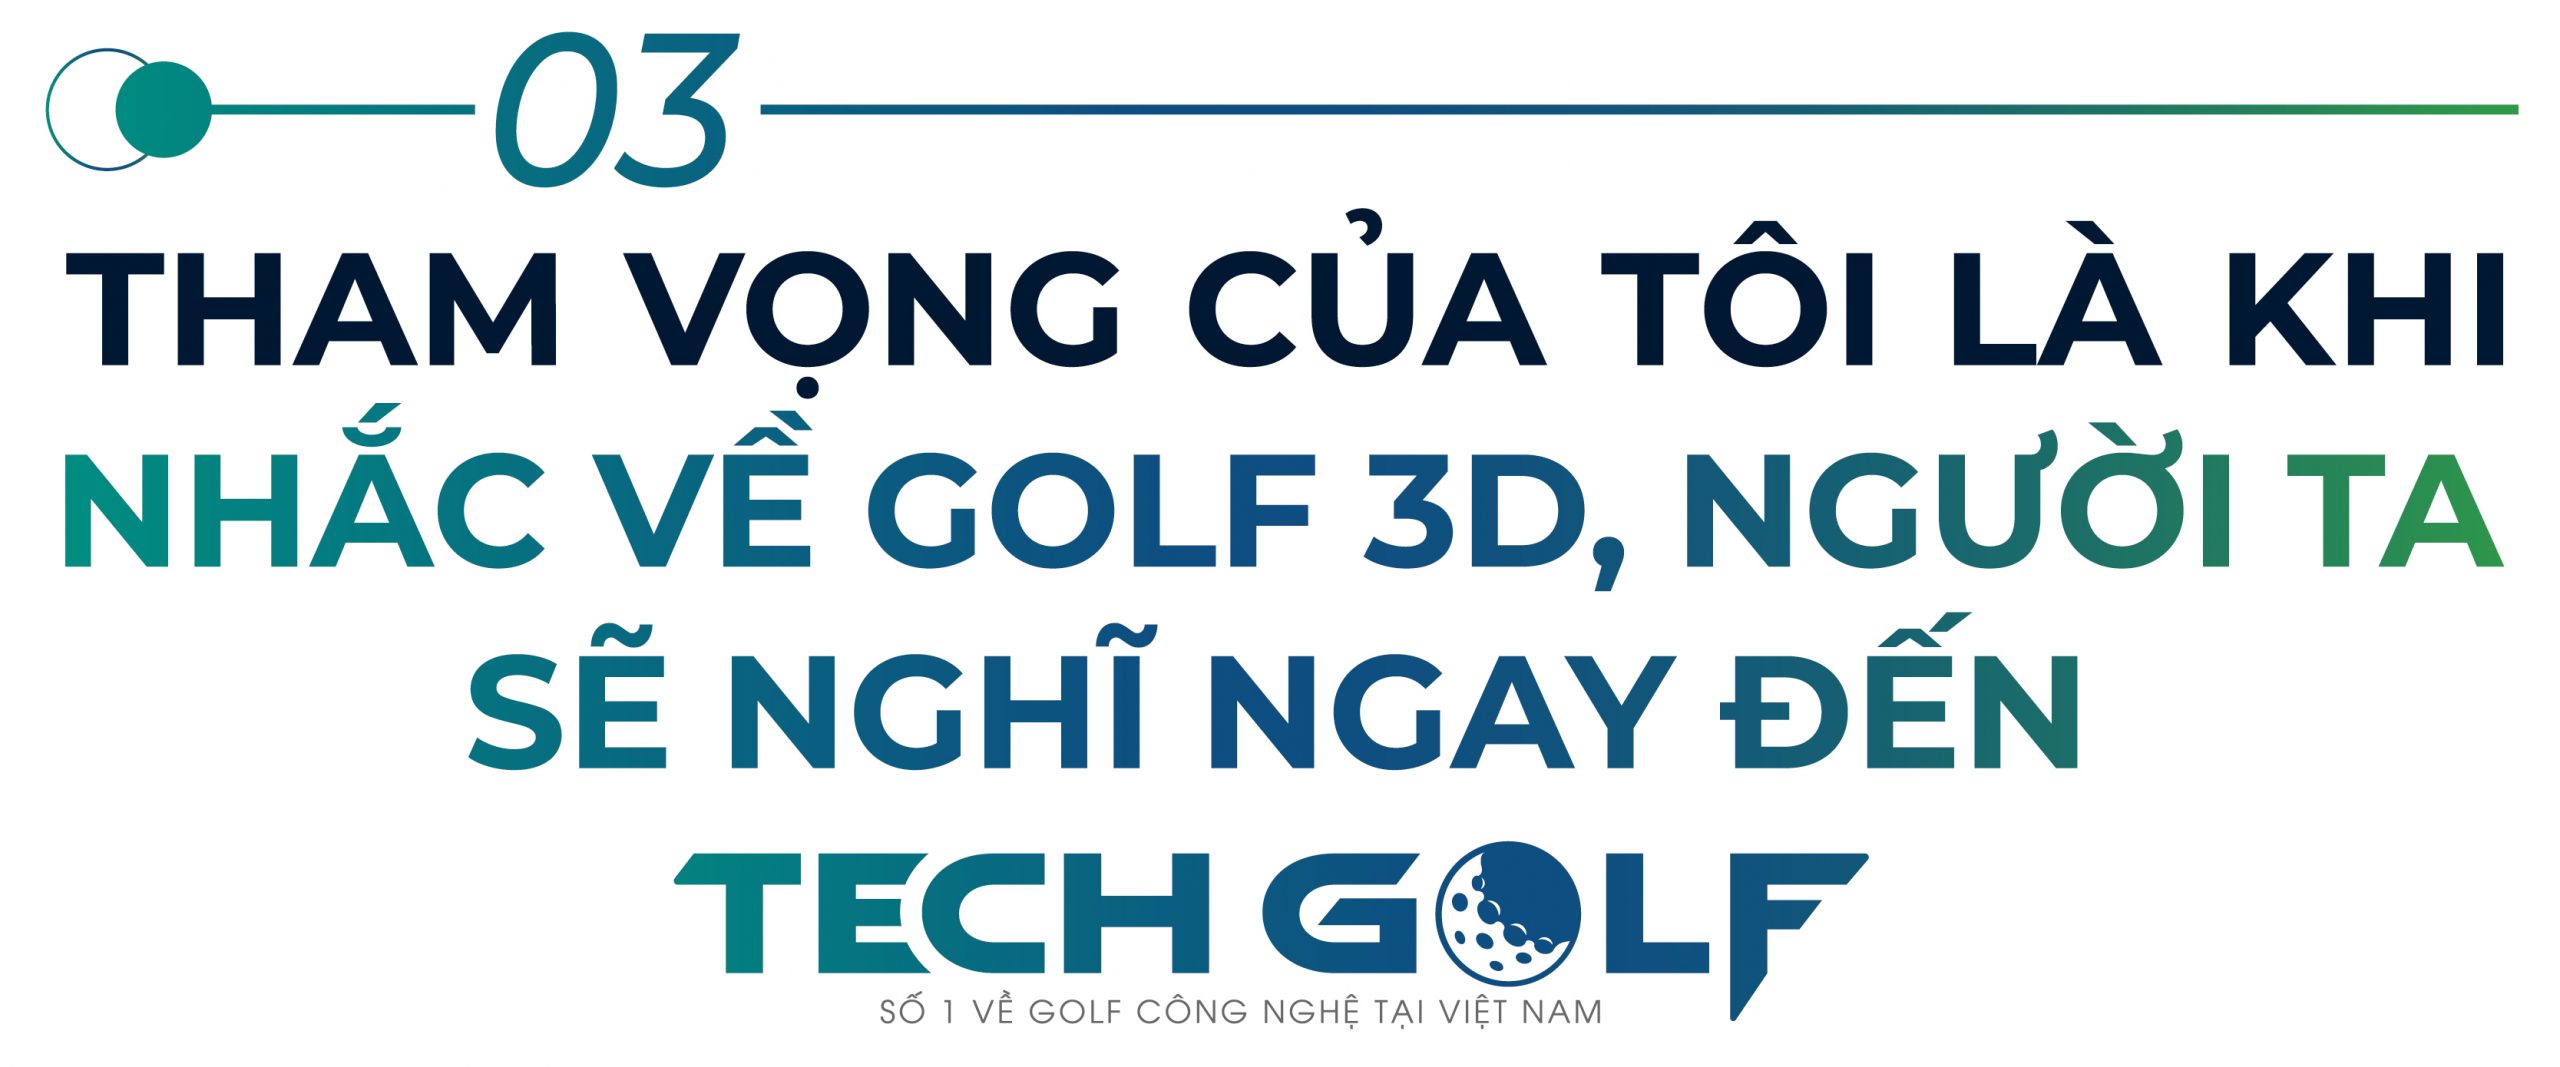 Tham vọng của tôi là khi nghĩ đến golf 3D, người ta sẽ nghĩ ngay đến Techgolf